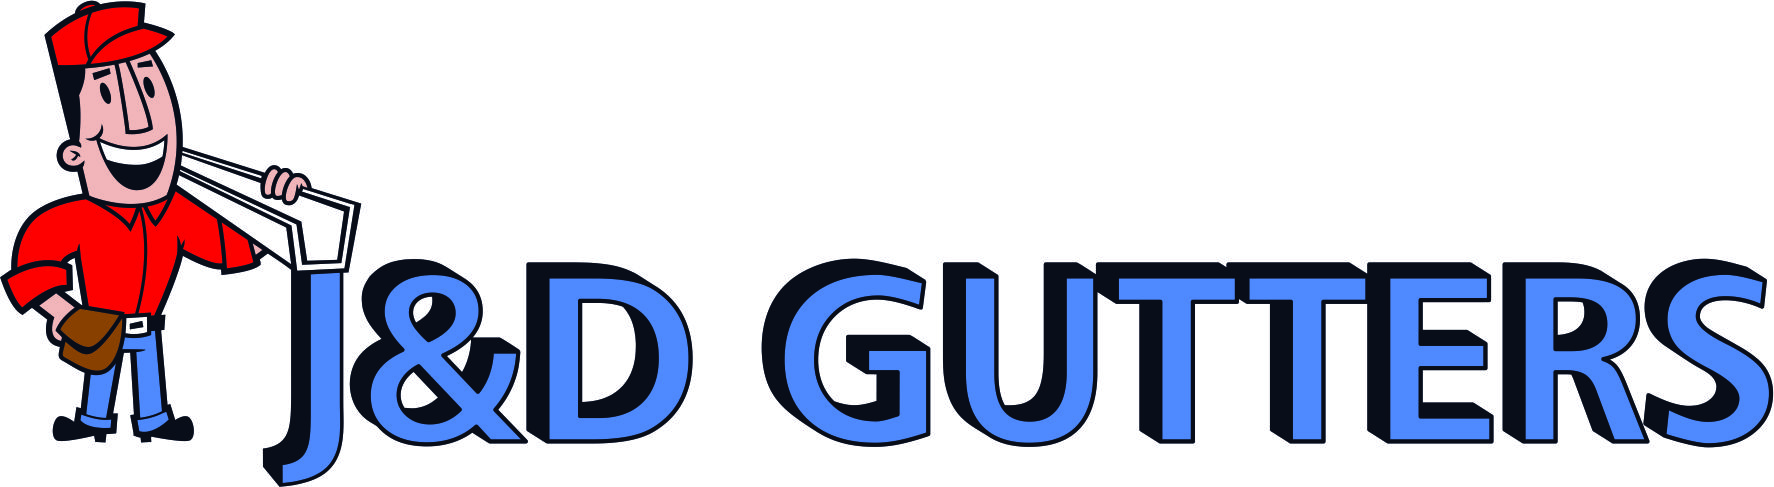 J & D Gutters Logo